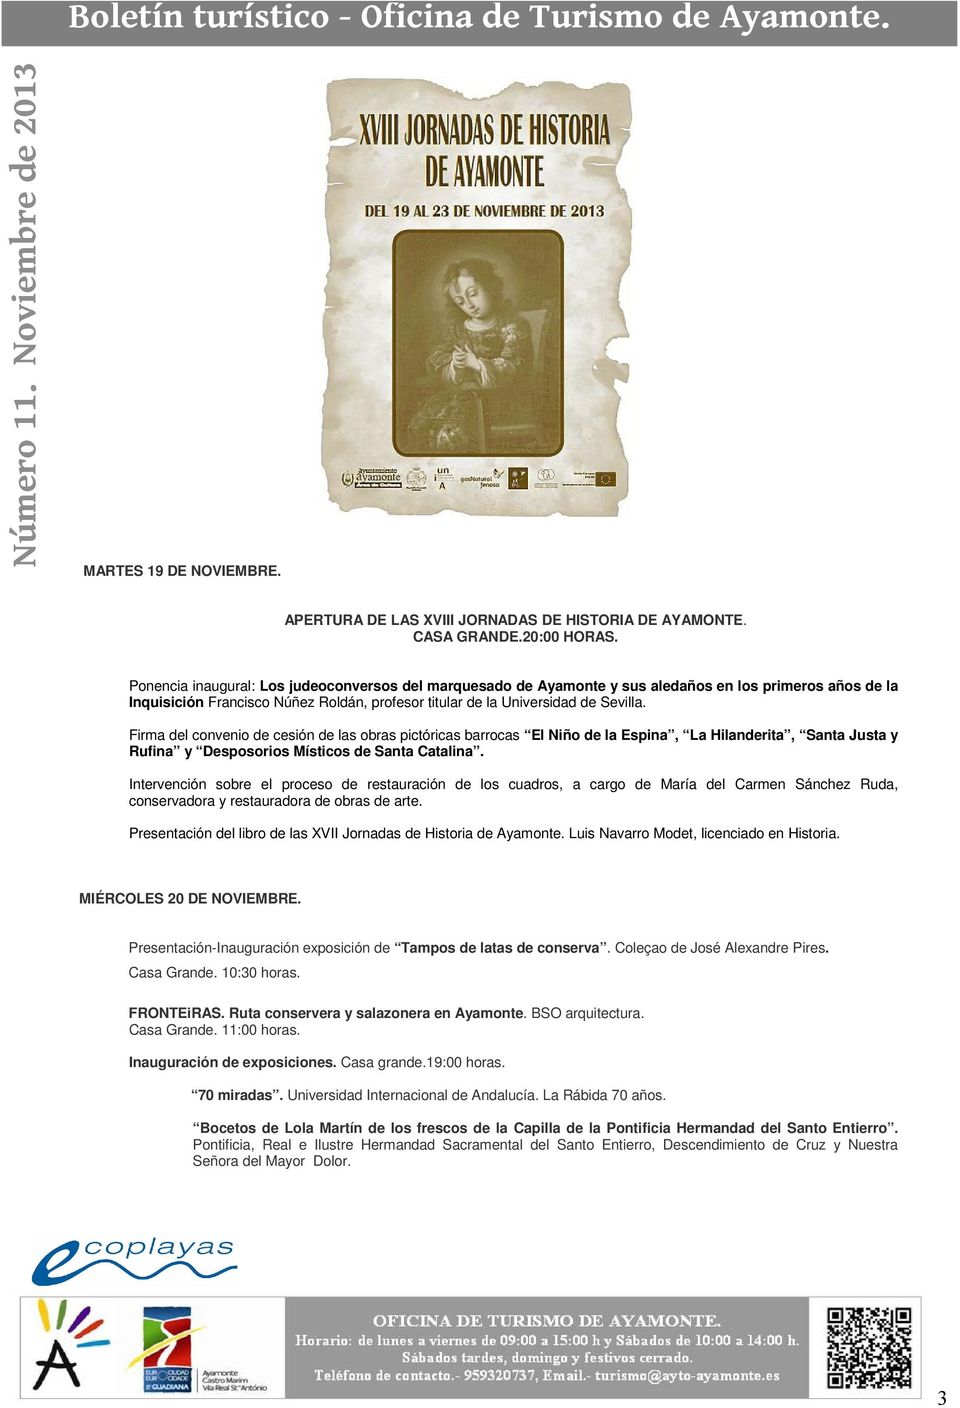 Firma del convenio de cesión de las obras pictóricas barrocas El Niño de la Espina, La Hilanderita, Santa Justa y Rufina y Desposorios Místicos de Santa Catalina.